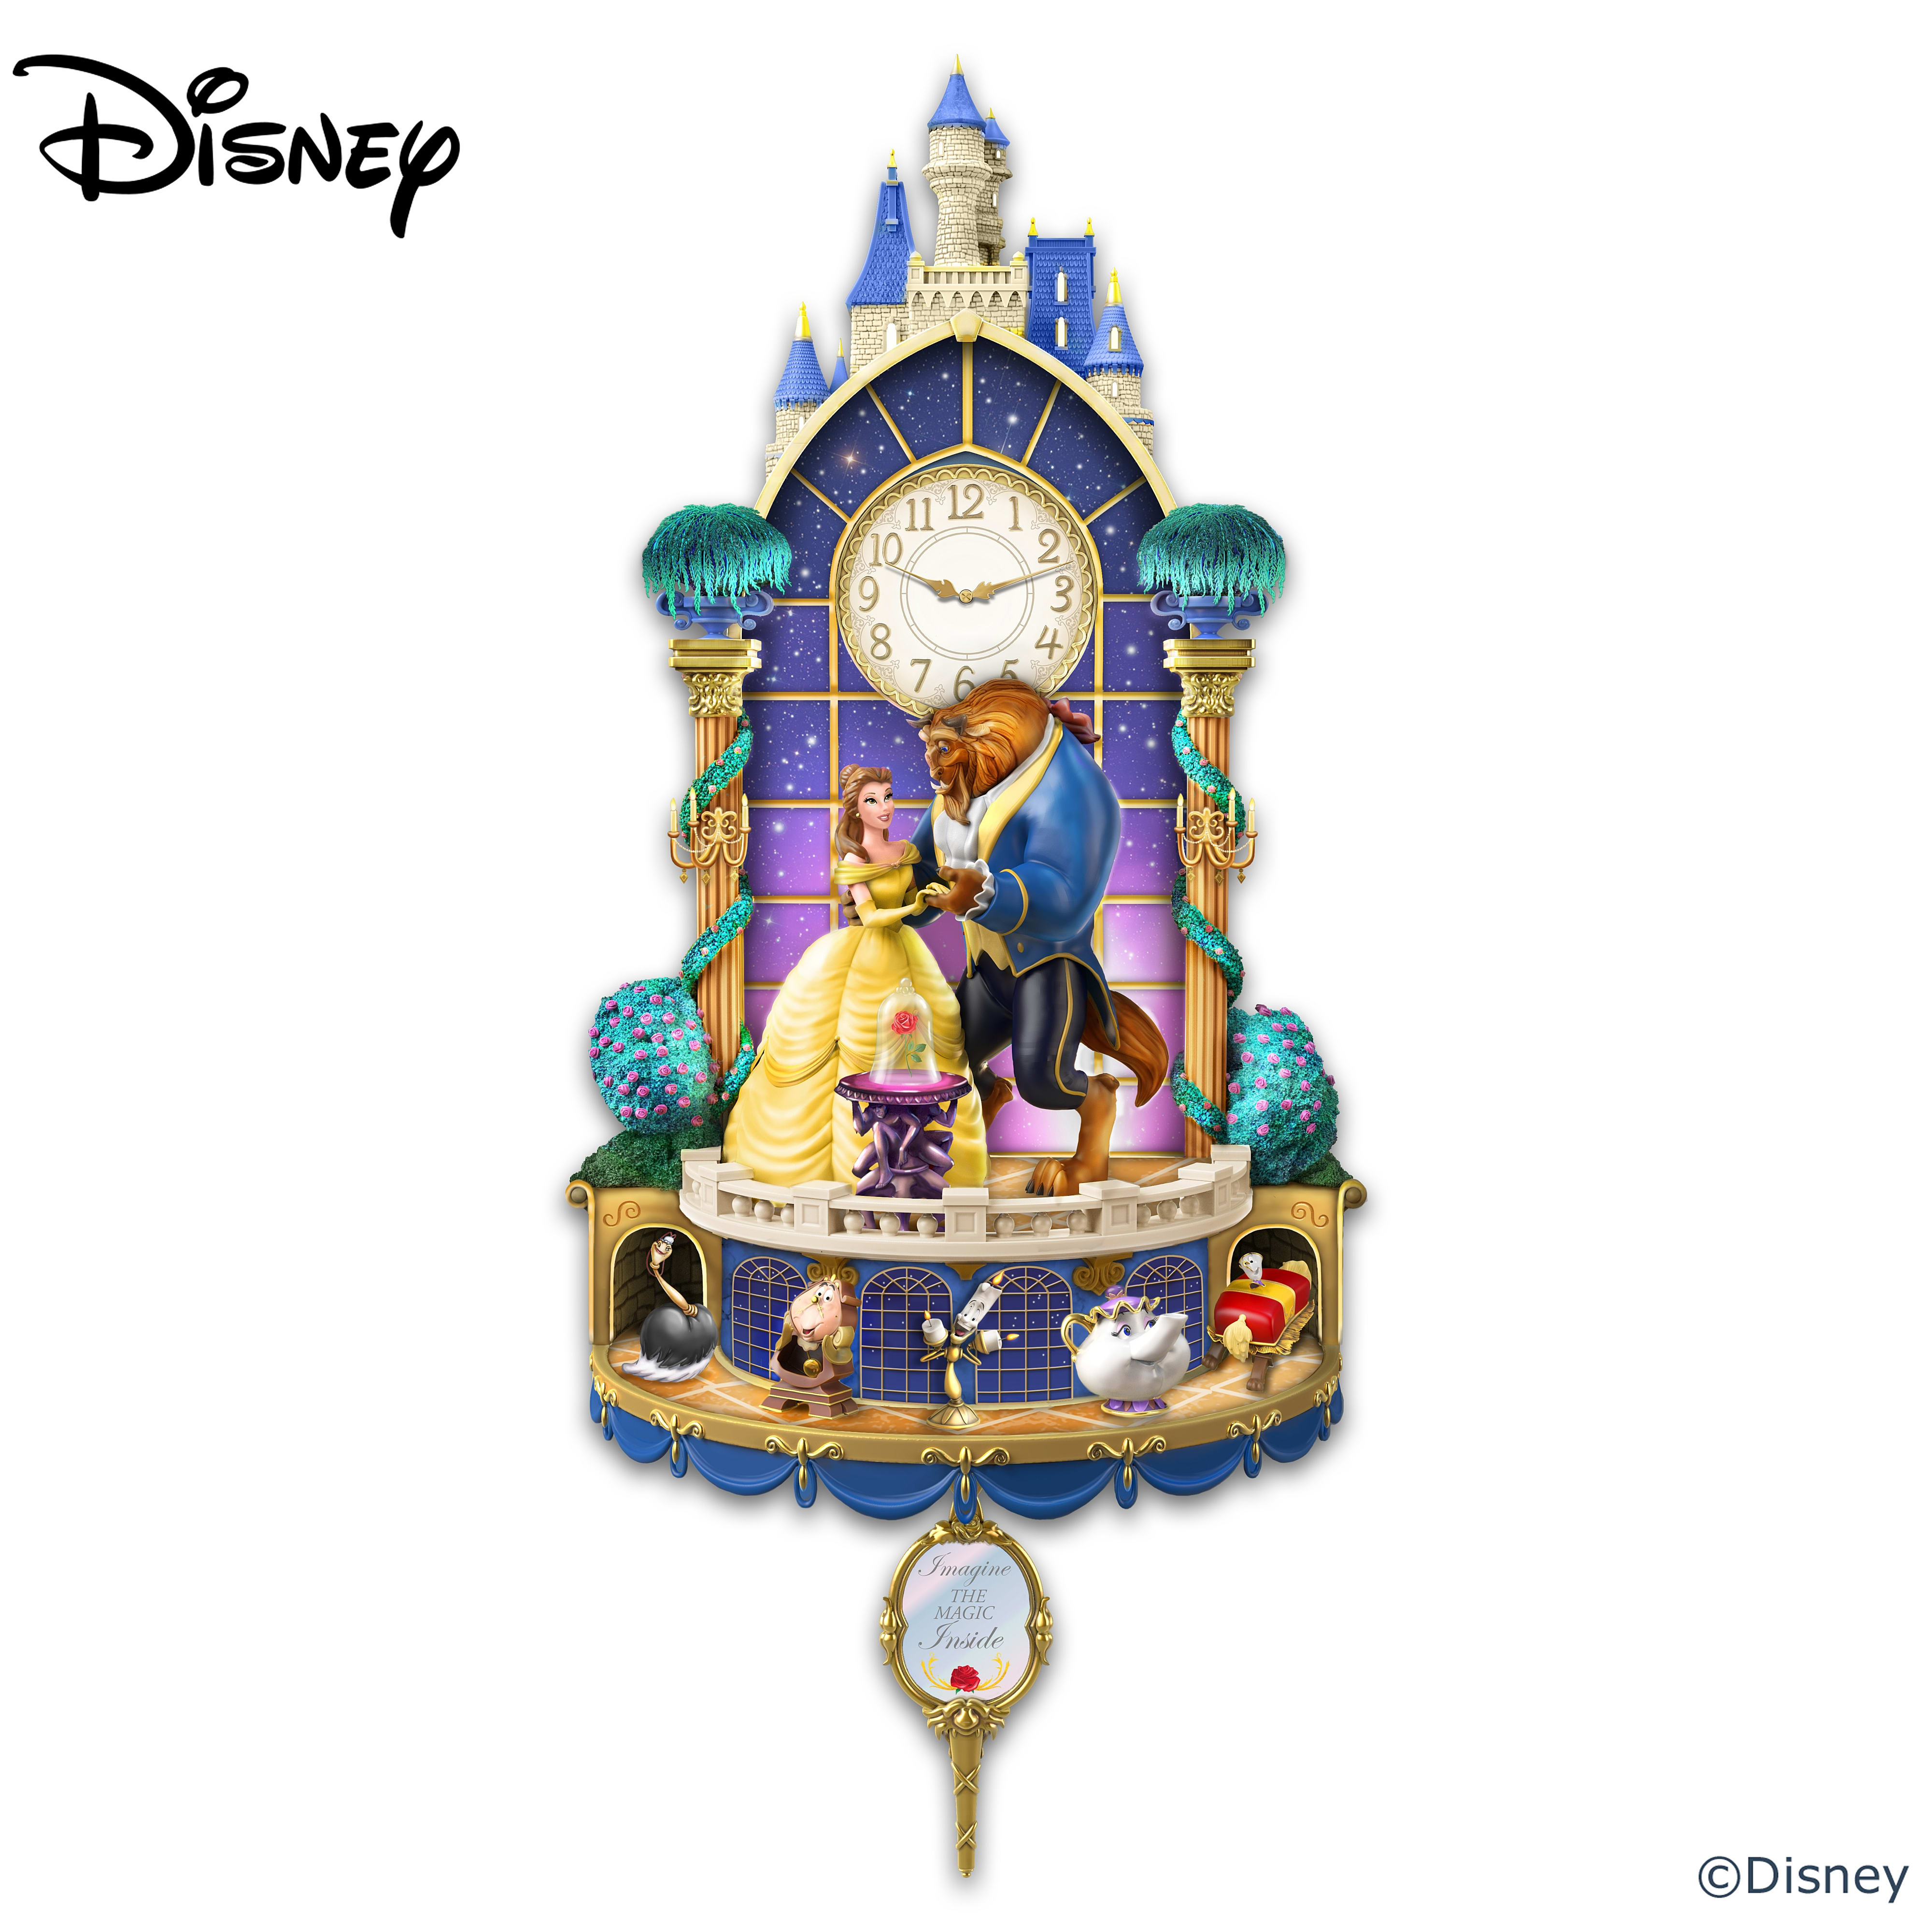 Disney Beauty And The Beast Illuminated Wall Clock